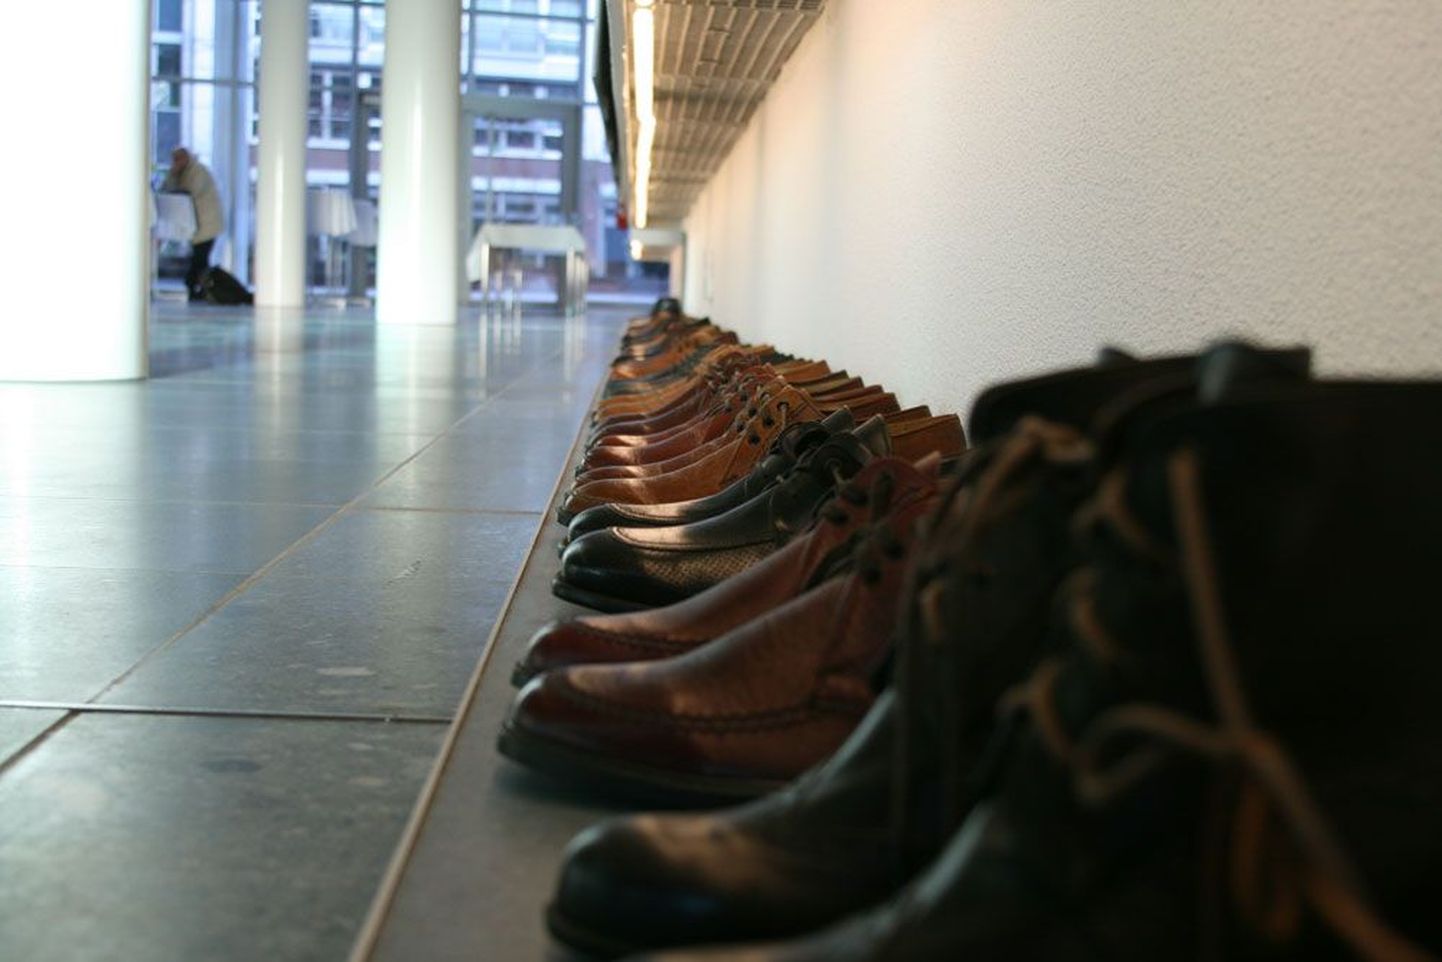 Saksa pangaliidu fuajeed Berliinis ehtis väljapanek, mille osaks olid kümned seina ääres kandjat ootavad kingad ja poolsaapad. Oletada võib, et see kujutas töötuks jäänud pankurite saatust.